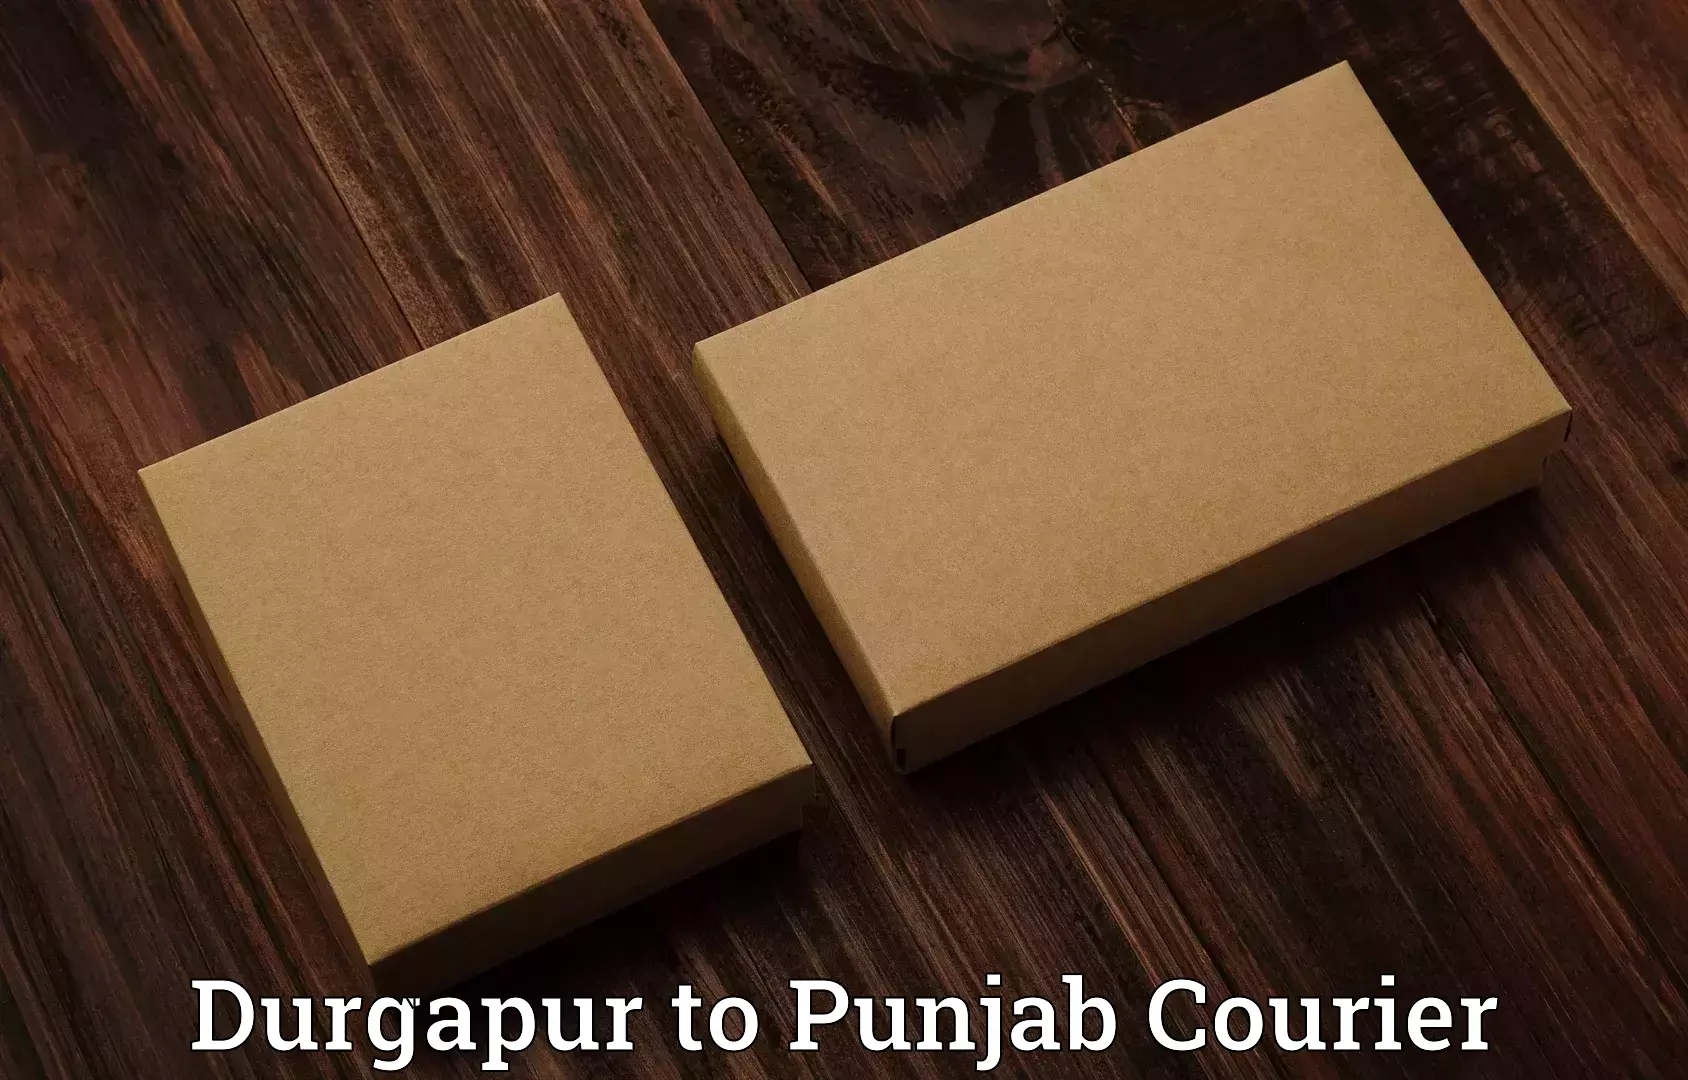 Baggage transport coordination Durgapur to Punjab